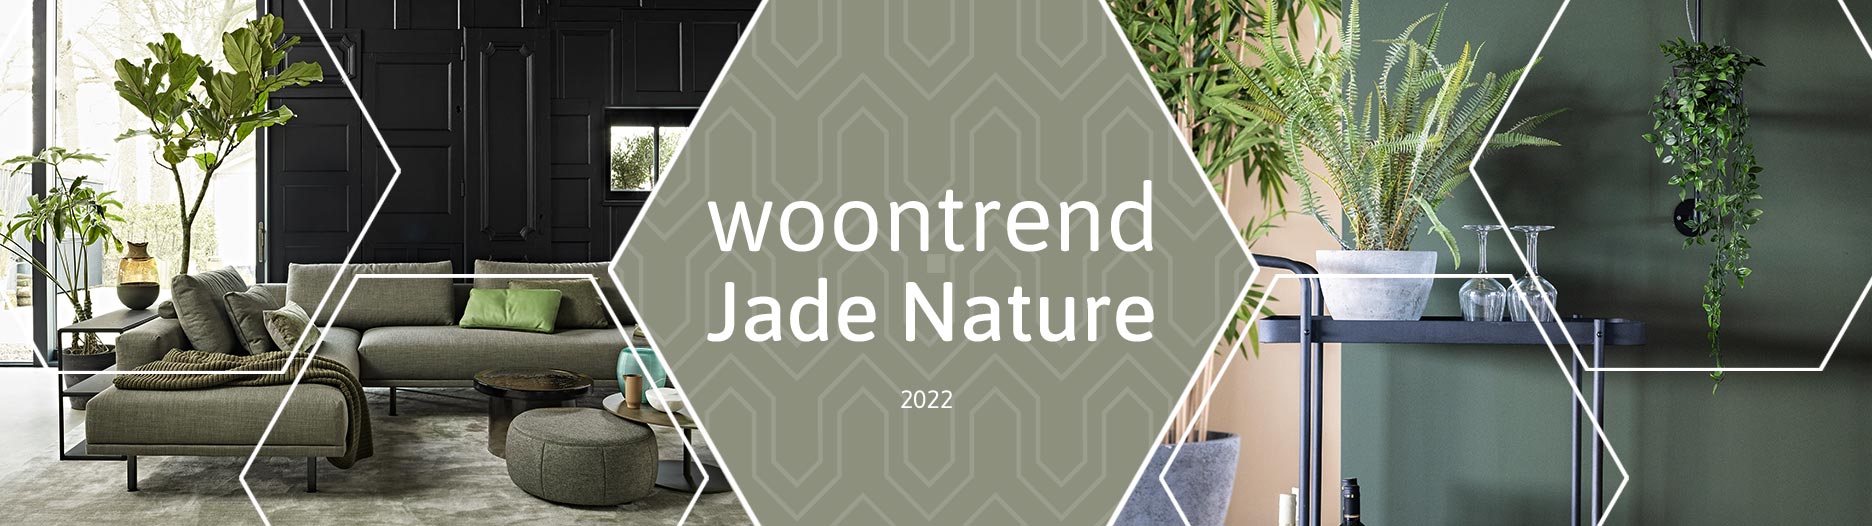 Woontrend Jade Nature bij Home Center